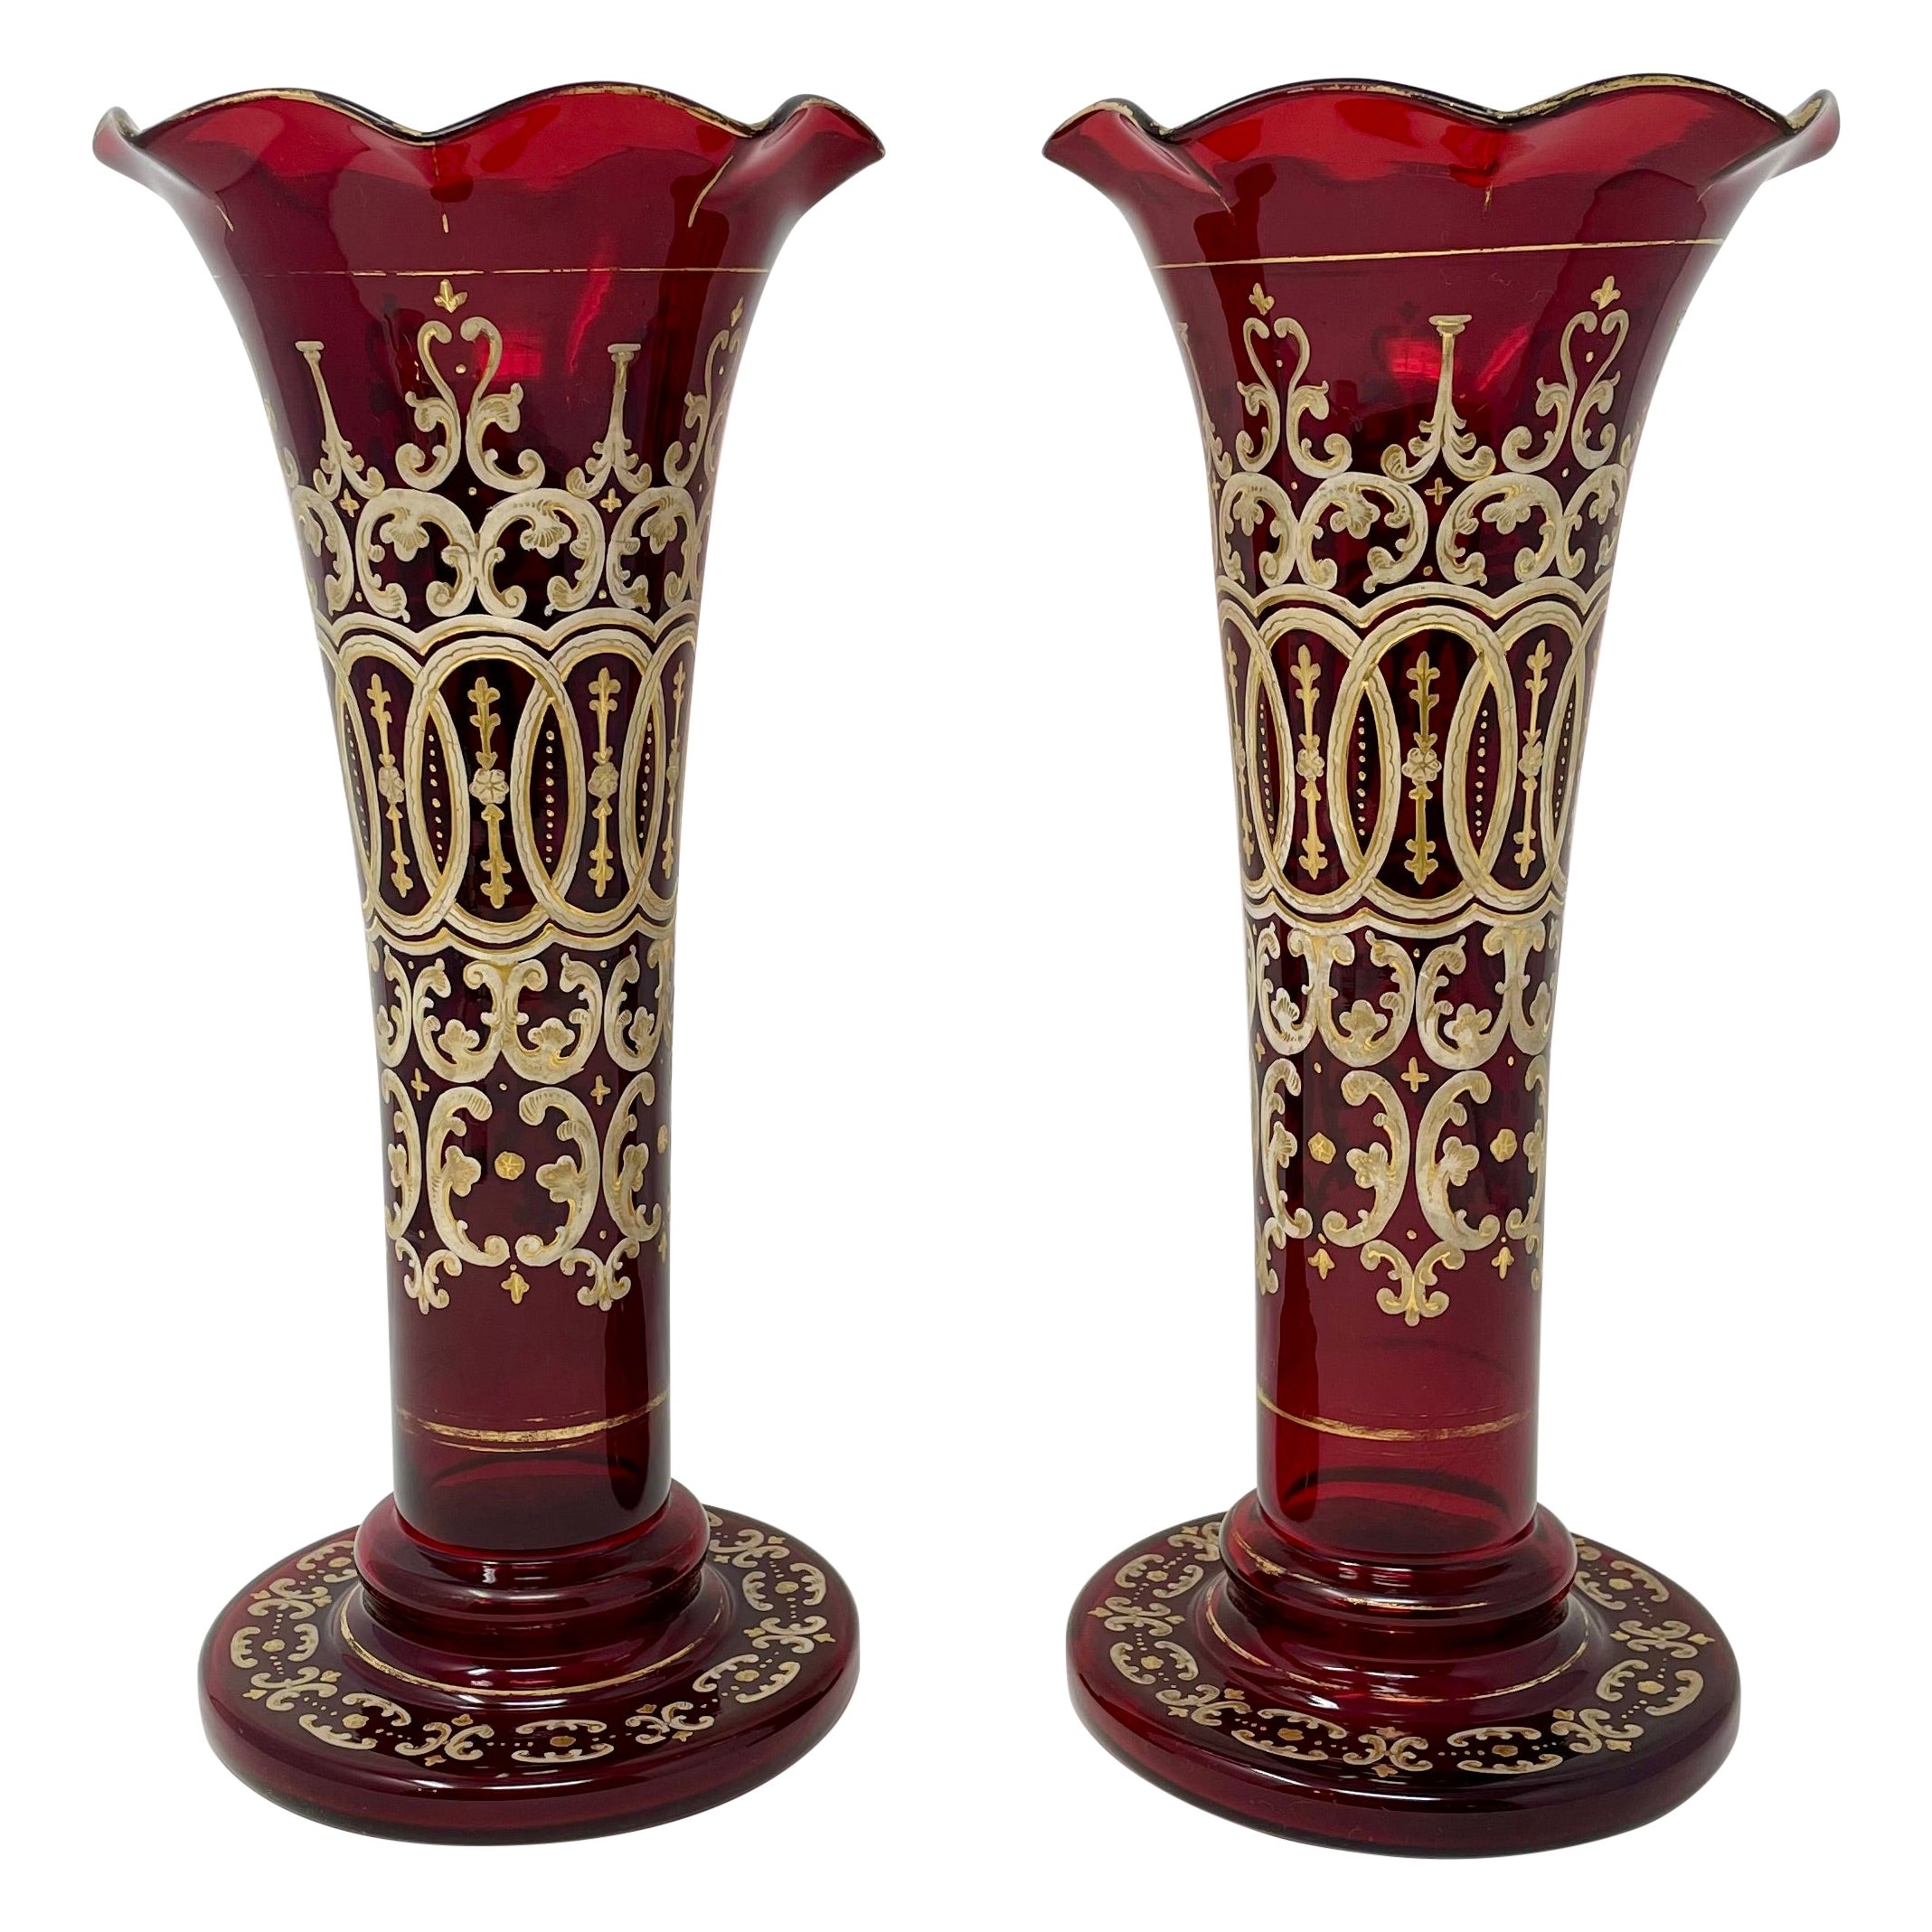 Paire de vases anciens en verre rubis avec détails en or peints à la main, vers 1890.